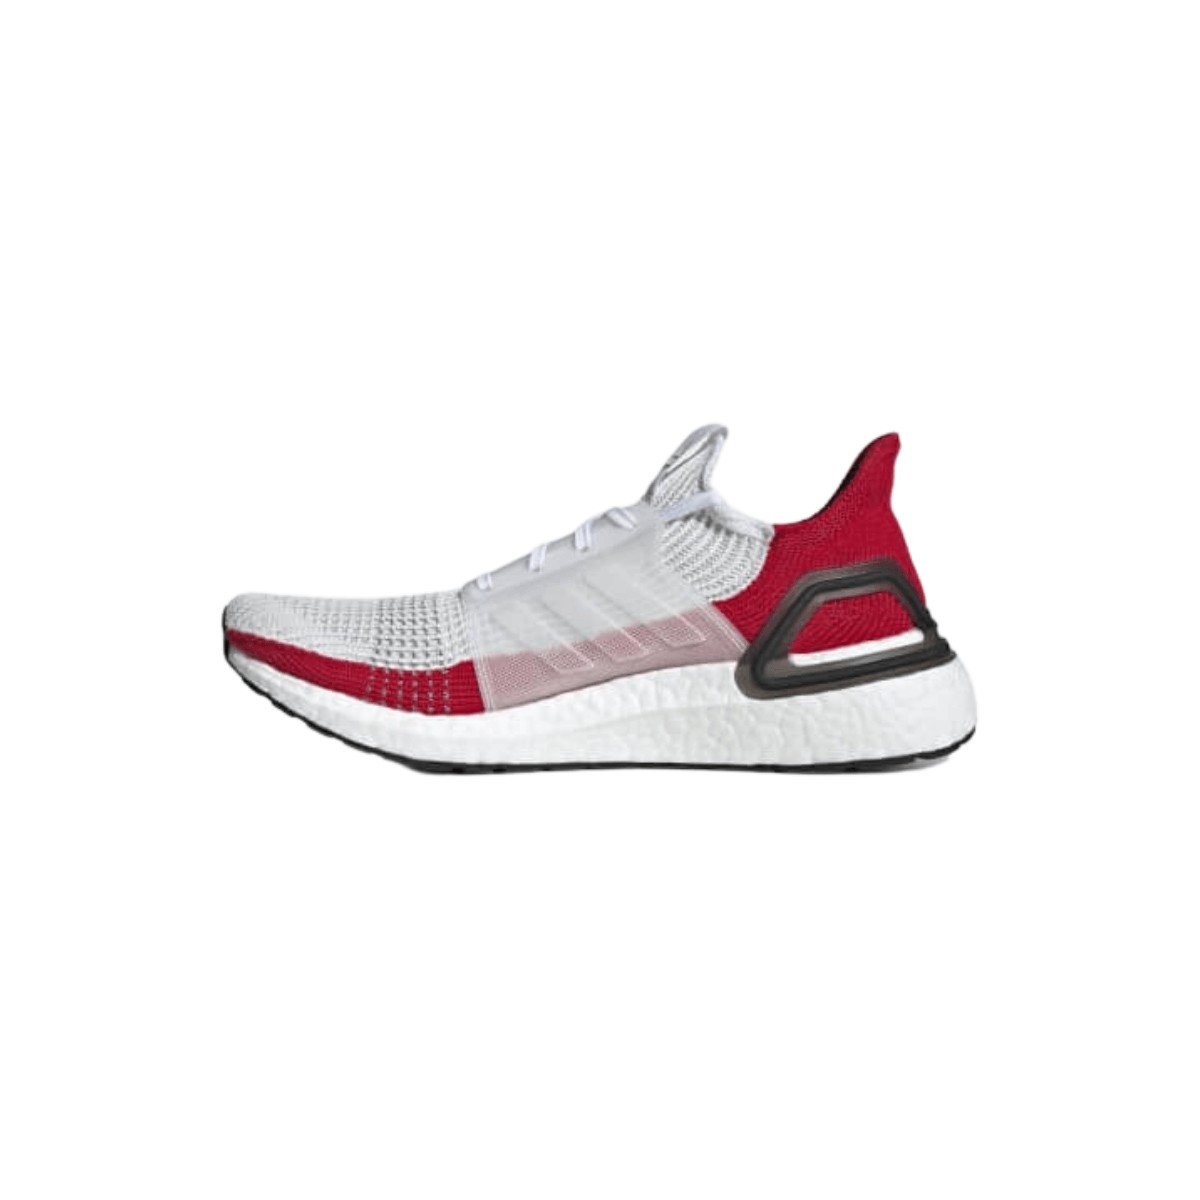 Inactivo patrocinado contar Zapatillas Adidas Ultra Boost 19 blanco rojo